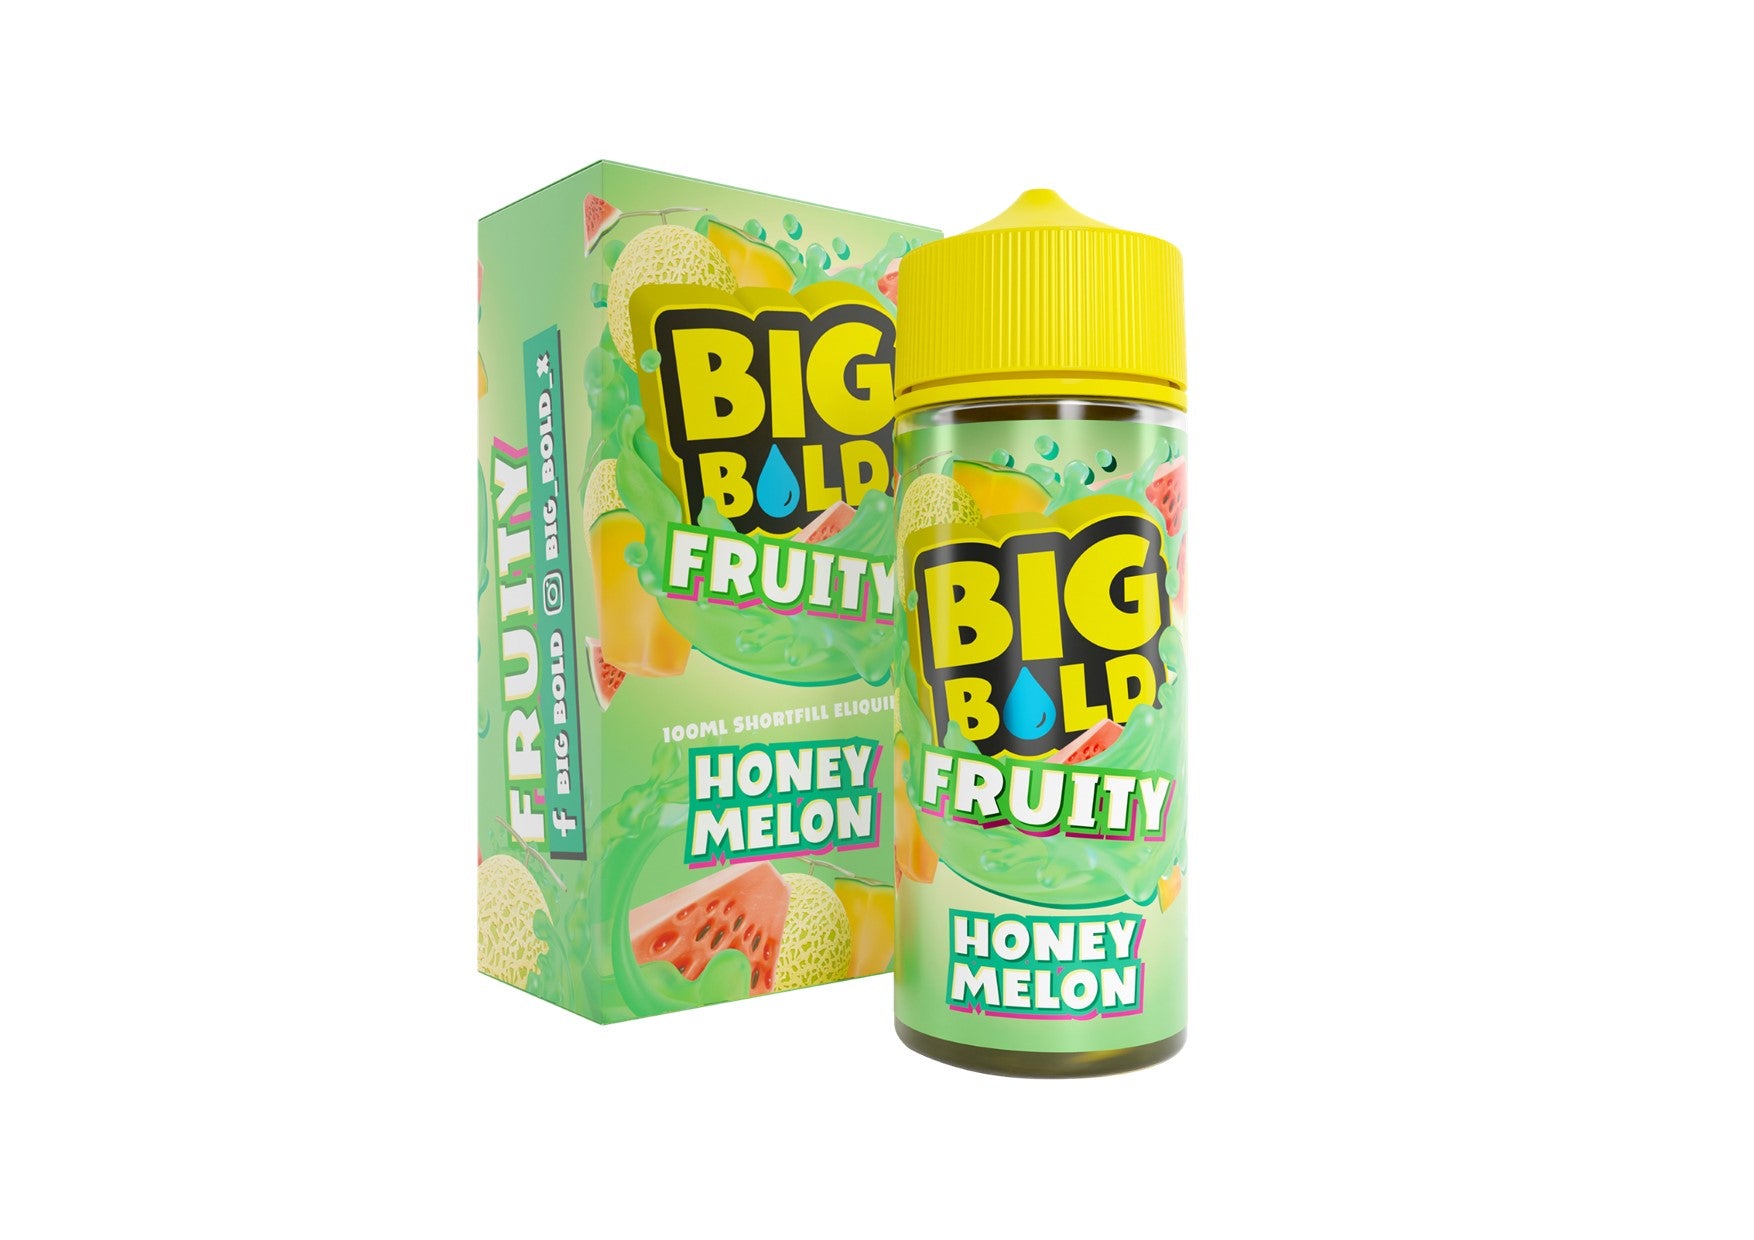 Big Bold | Fruity | Honey Melon